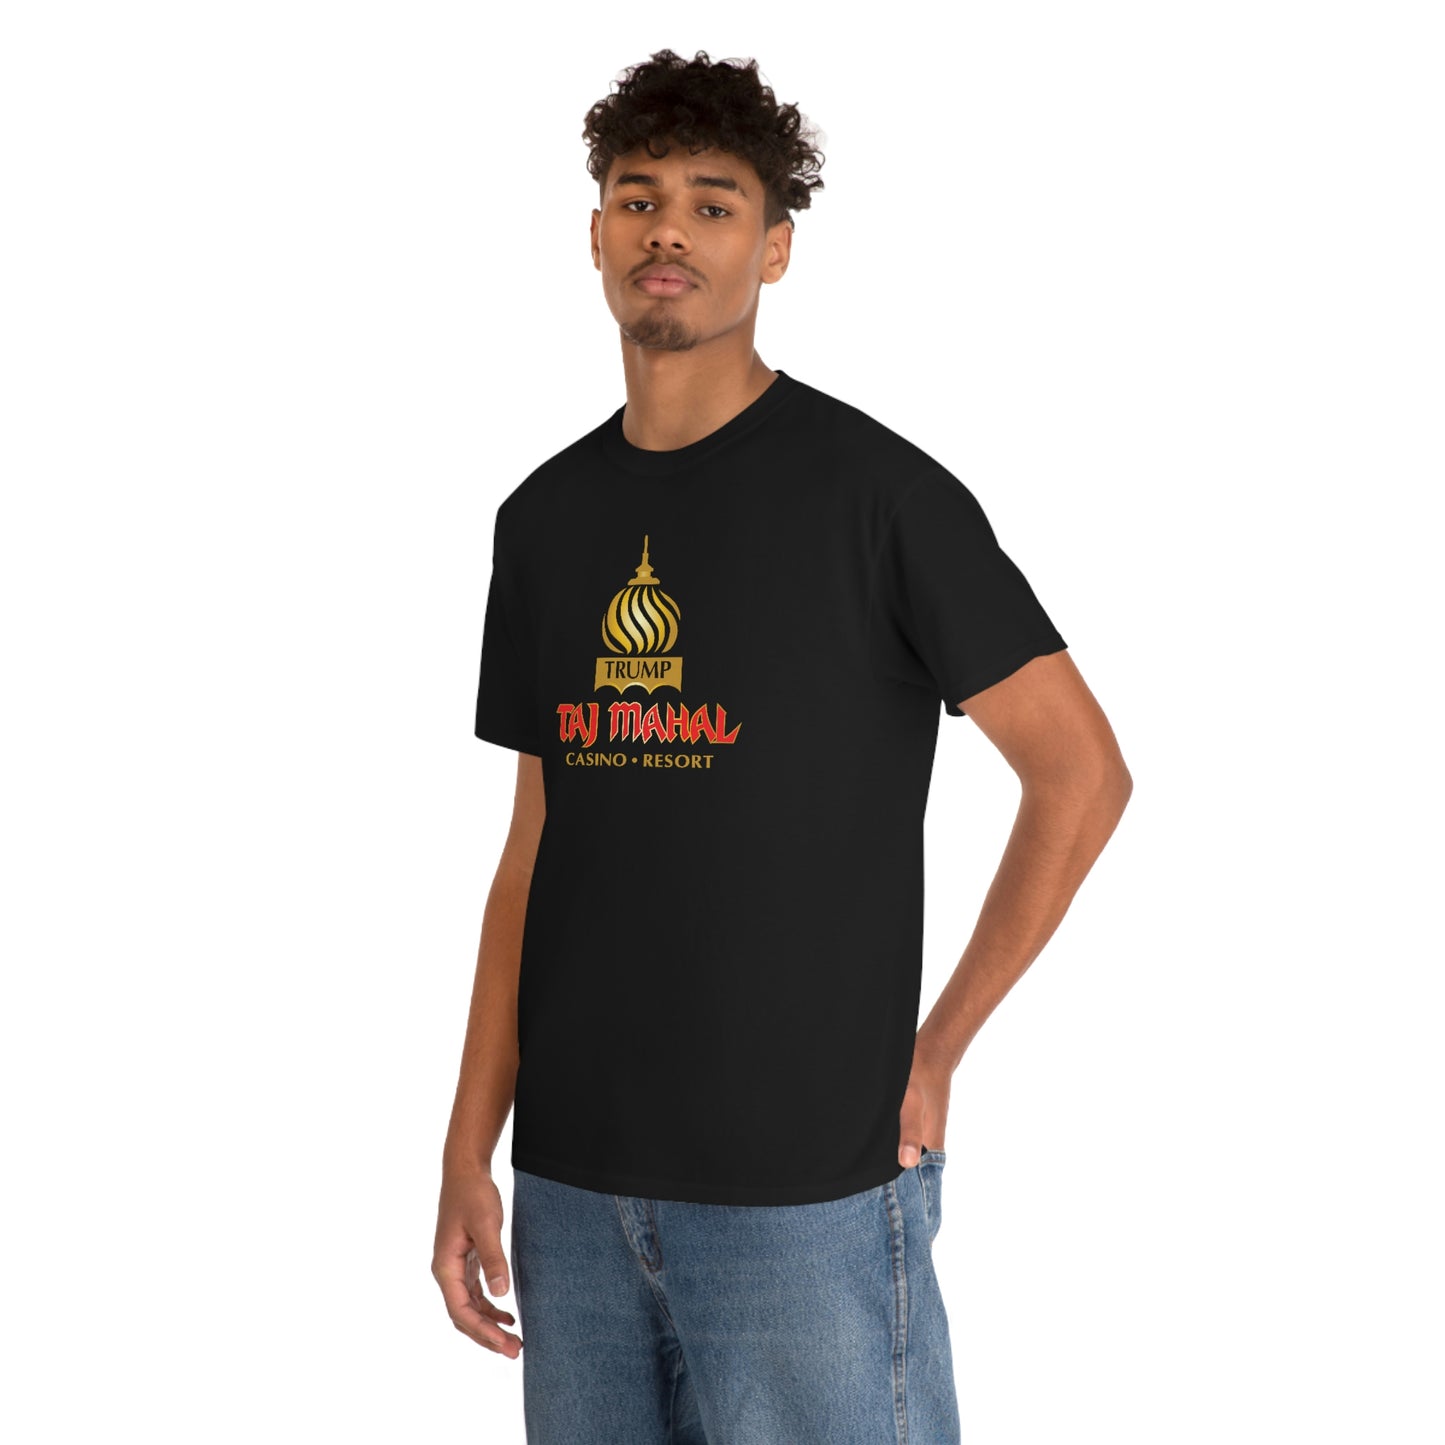 Trump Taj Mahal T-shirt